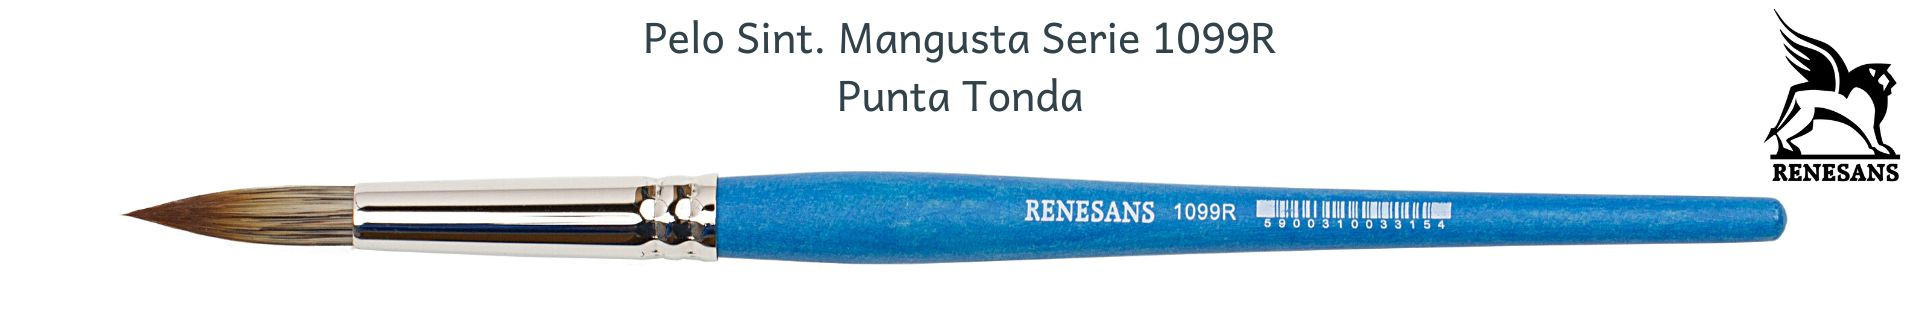 Renesans Mangusta Serie 1099R